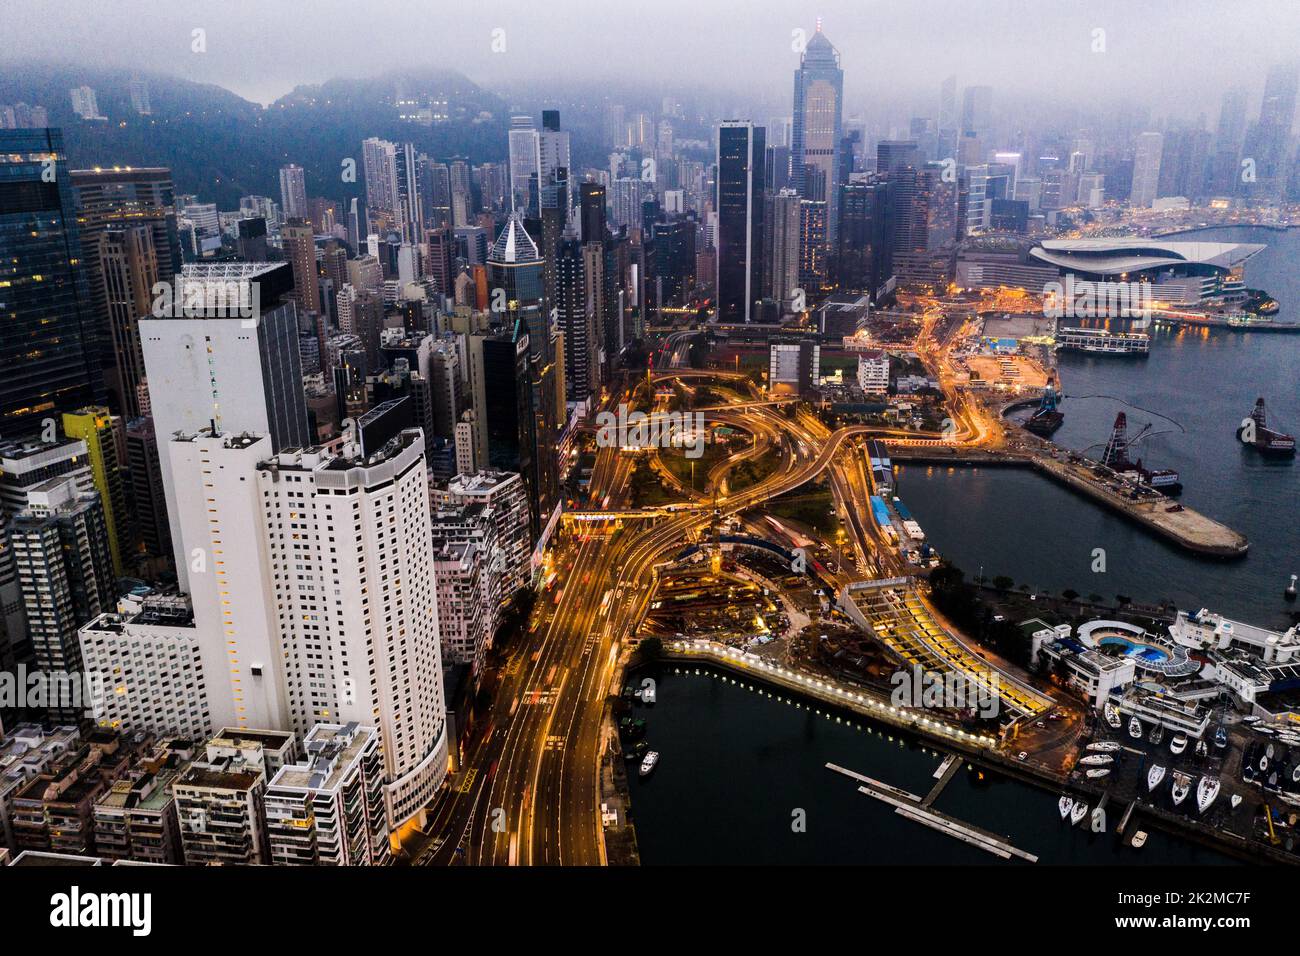 Ti innamorerai di questa città. Scatto aereo di grattacieli, blocchi di uffici e altri edifici commerciali nella metropoli urbana di Hong Kong. Foto Stock